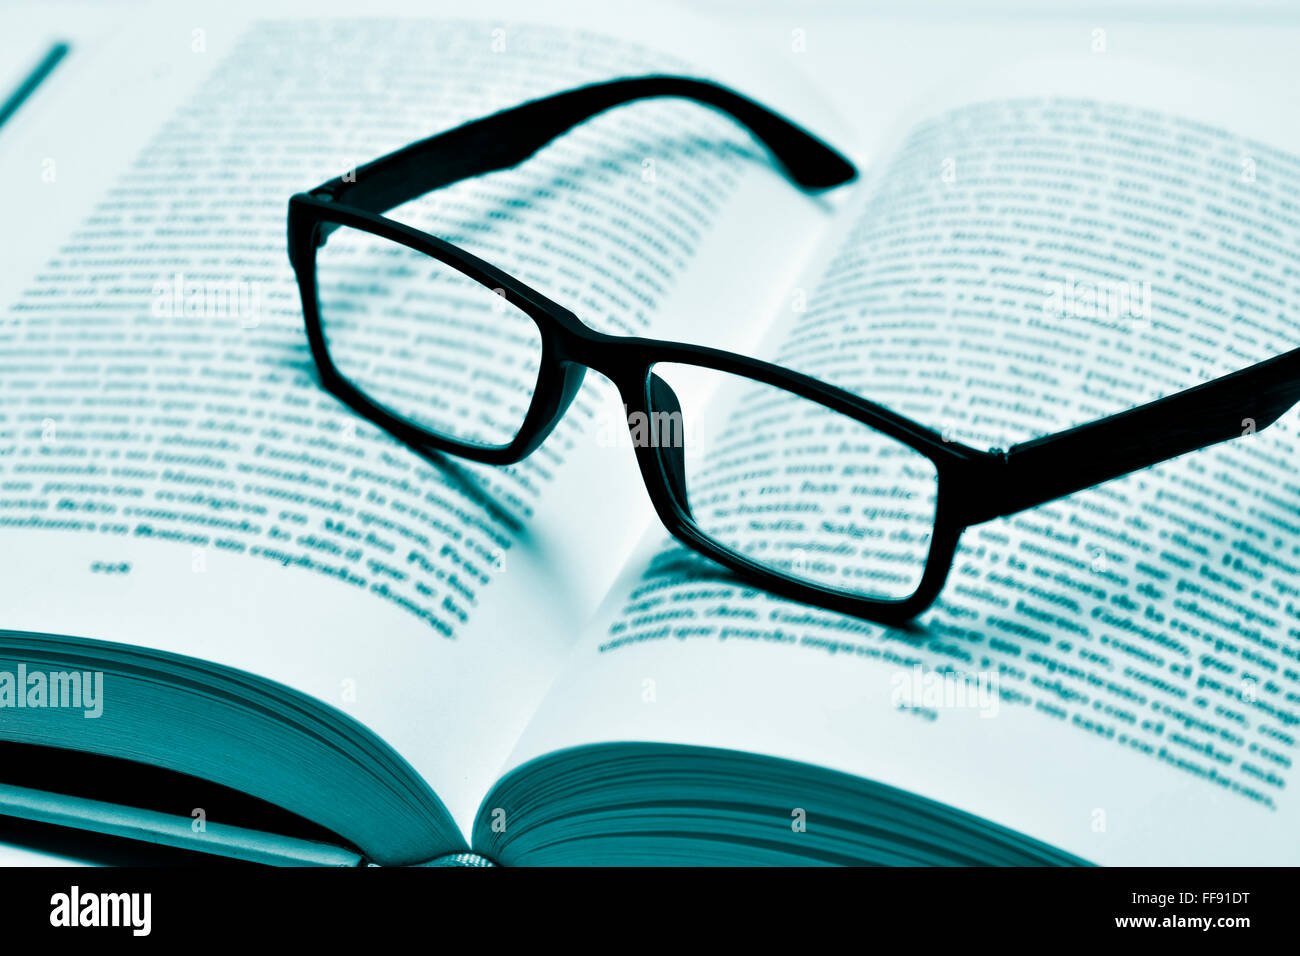 Libre d'une paire de lunettes cerclées de noir en plastique sur un livre ouvert, en duotone Banque D'Images